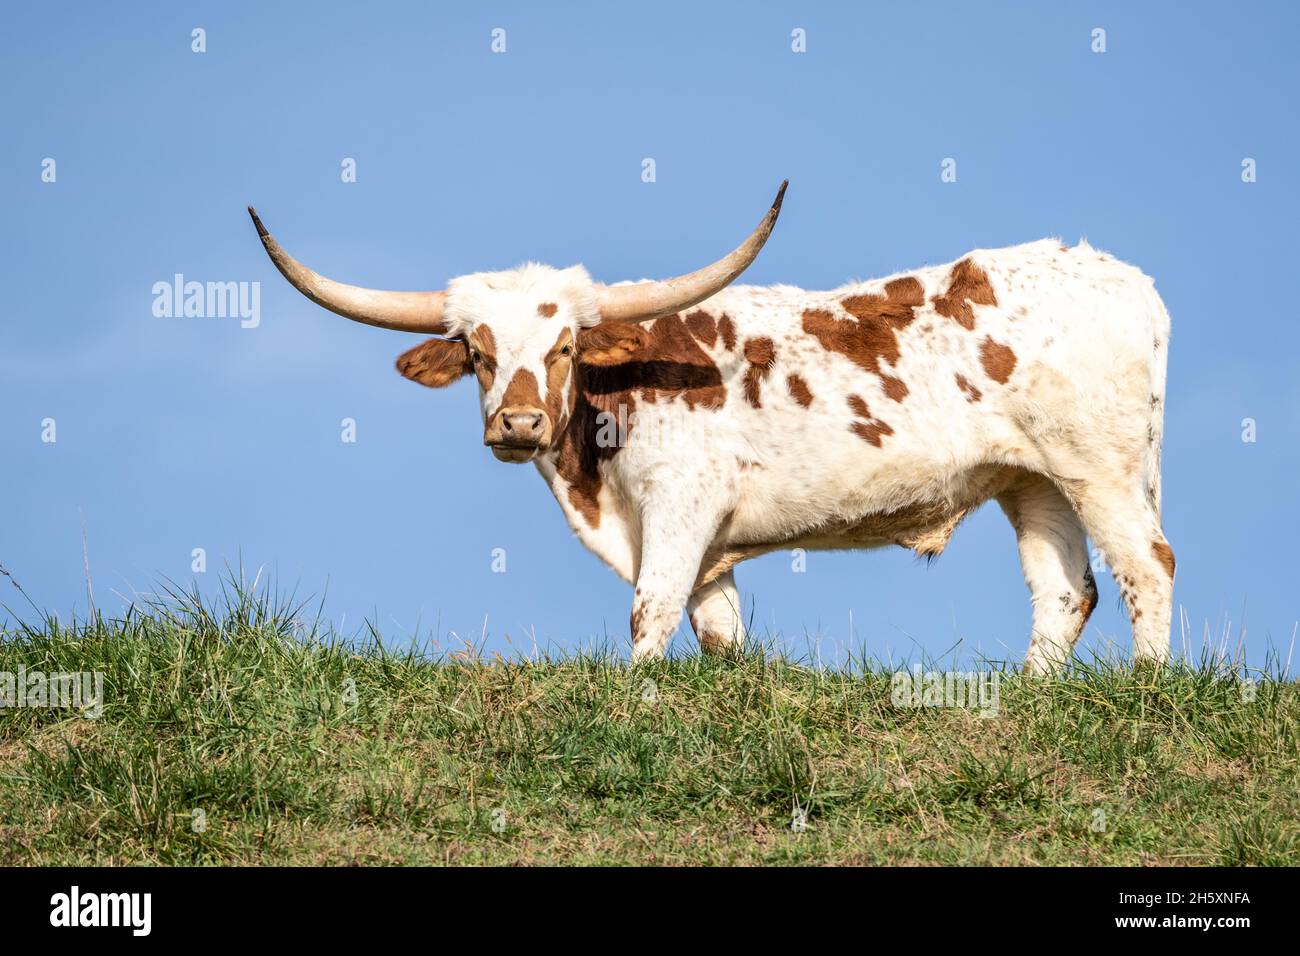 La vache longhorn du Texas pâture sur une colline verdoyante.Prenez des photos sous un angle faible Banque D'Images